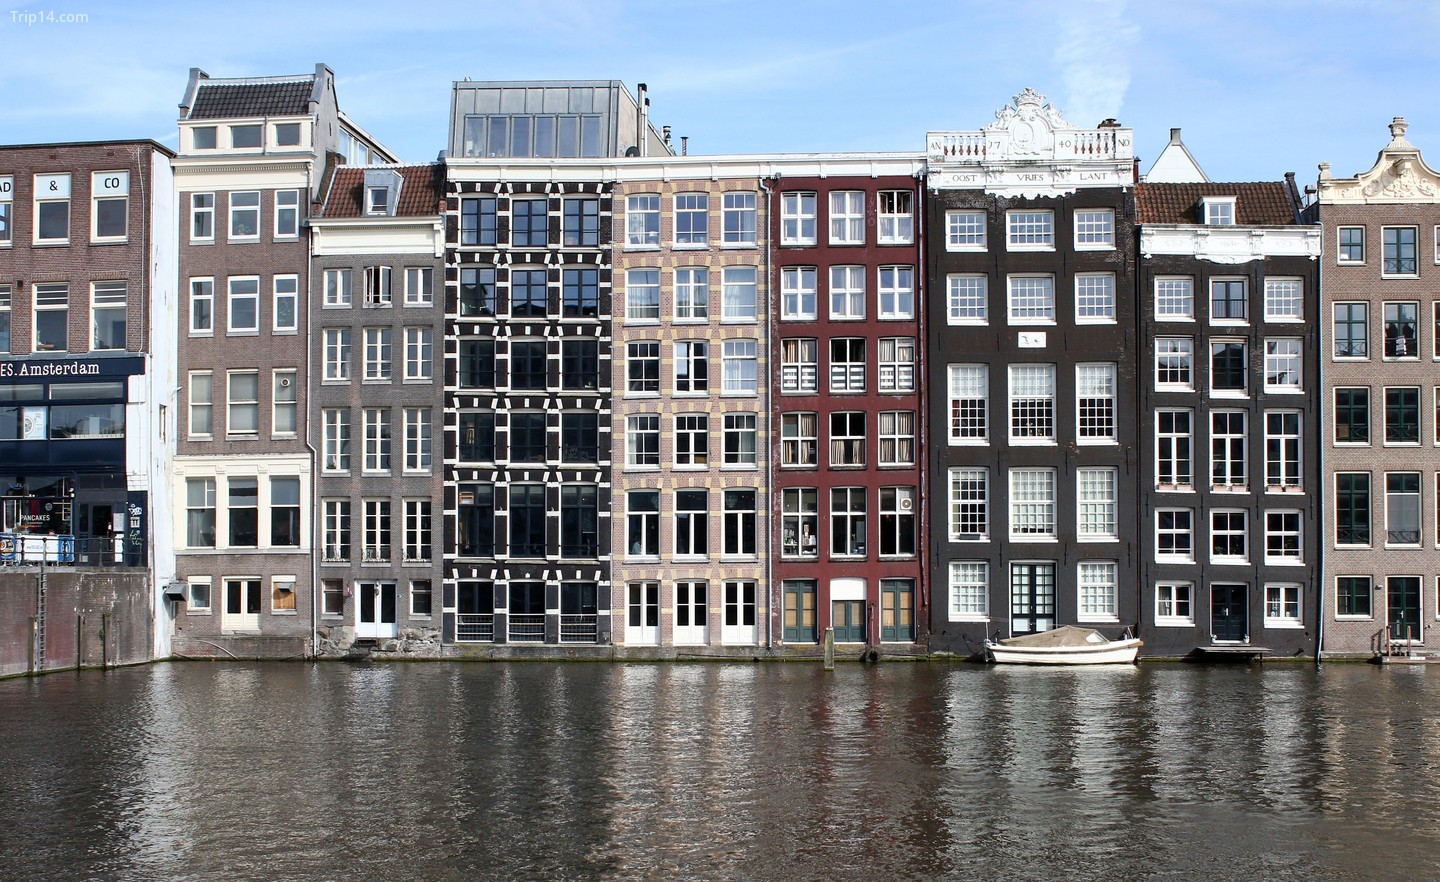 Đi bộ vào thành phố thời Trung cổ của Amsterdam